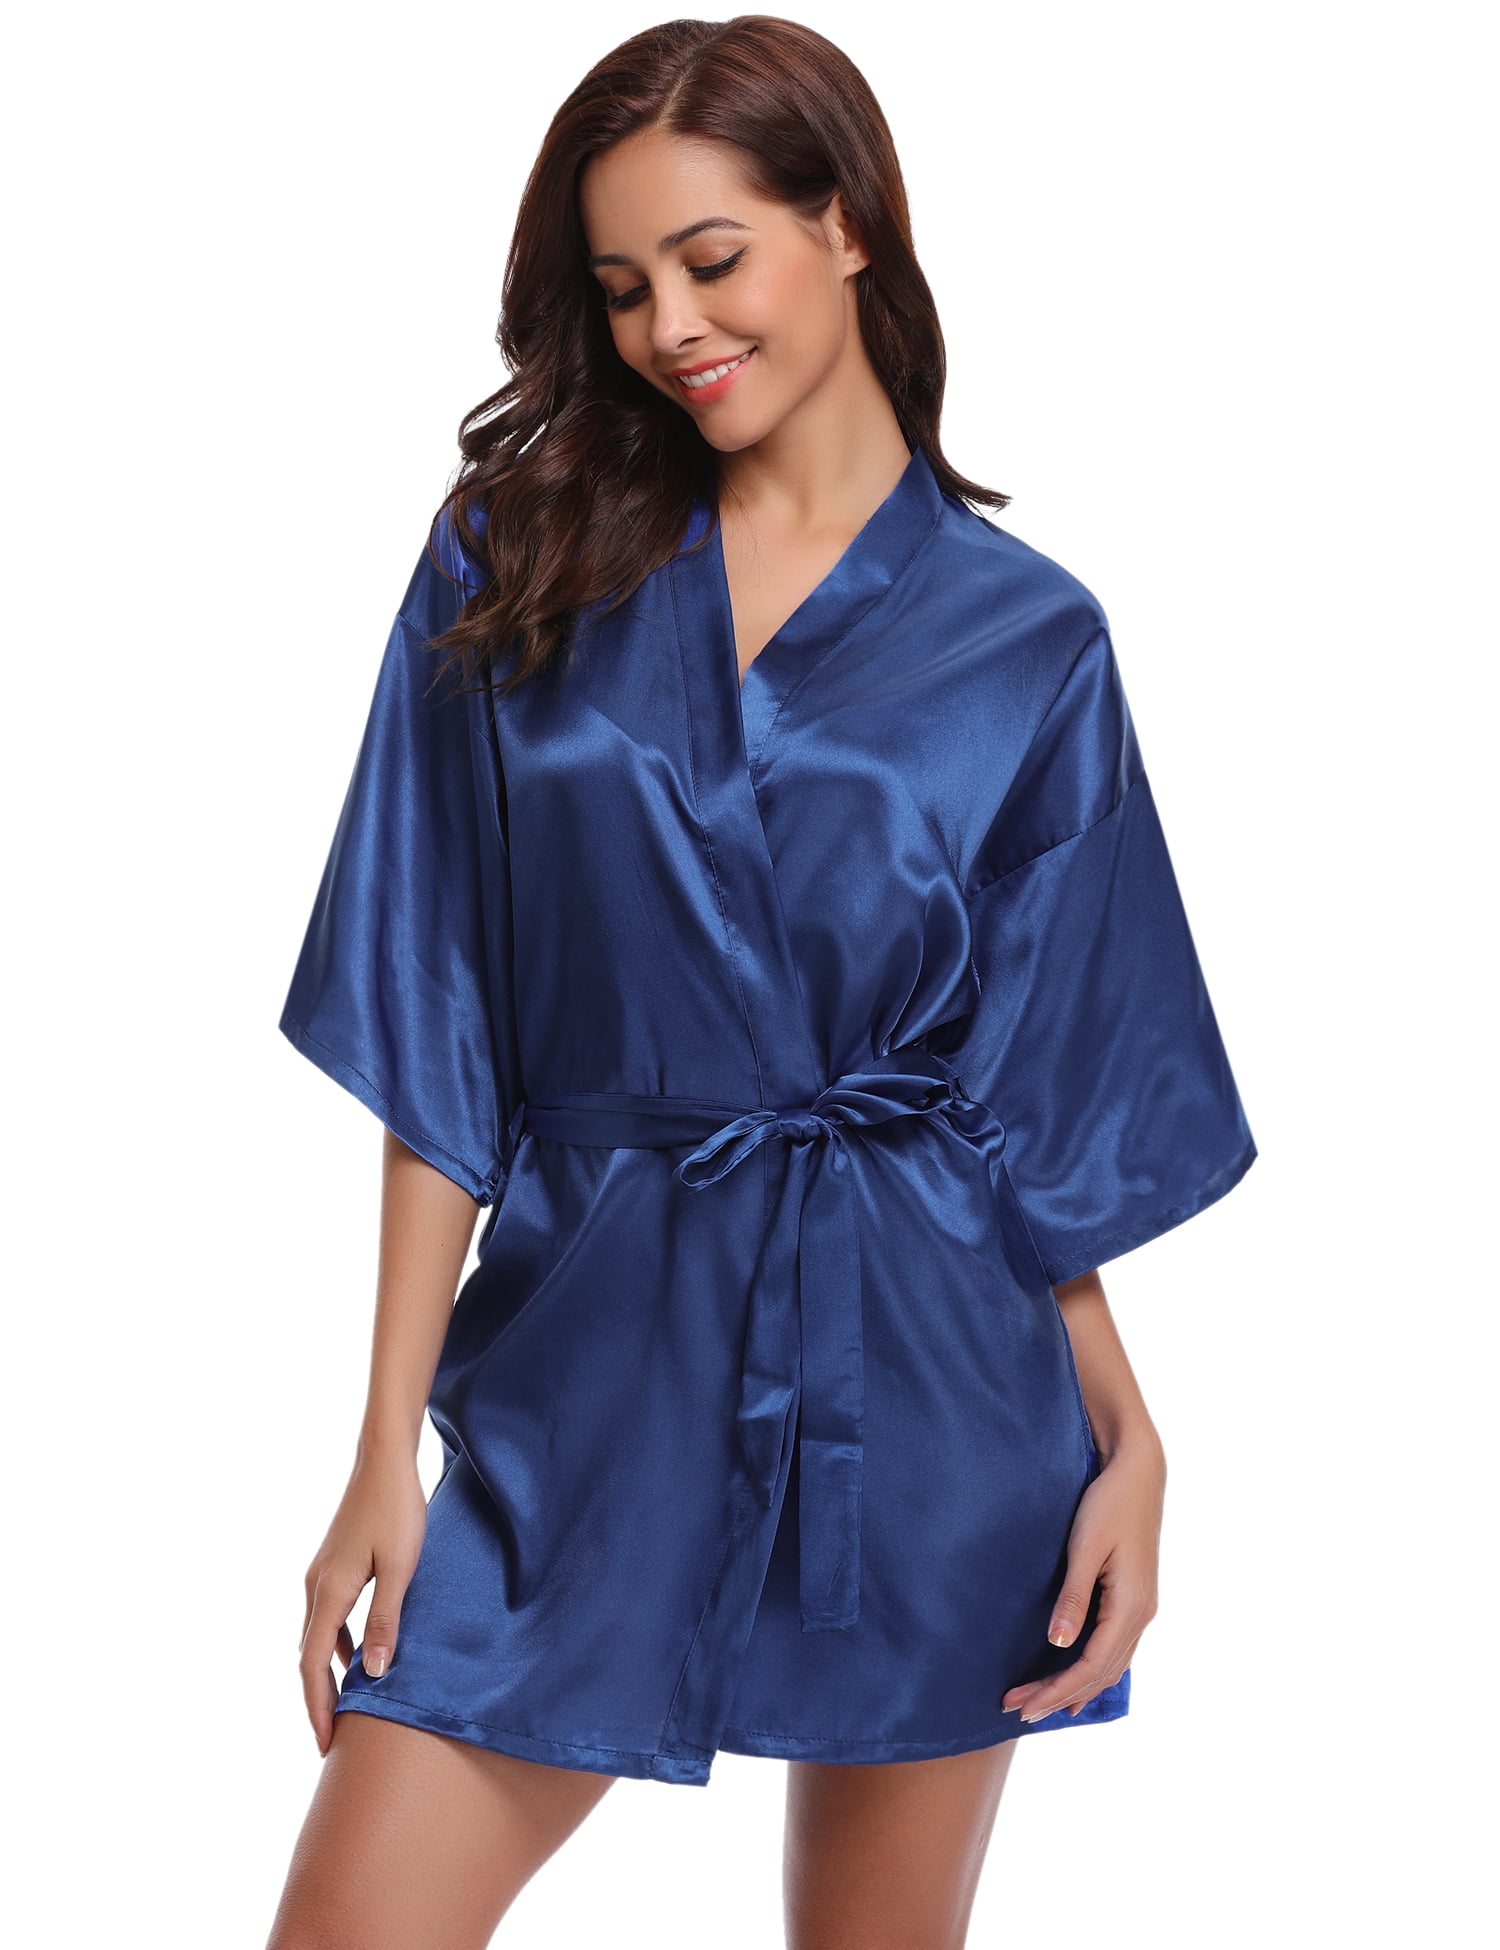 Abollria Womens Nightdress Ladies Cotton Sleeveless Nightwear Solid Long Sleepwear